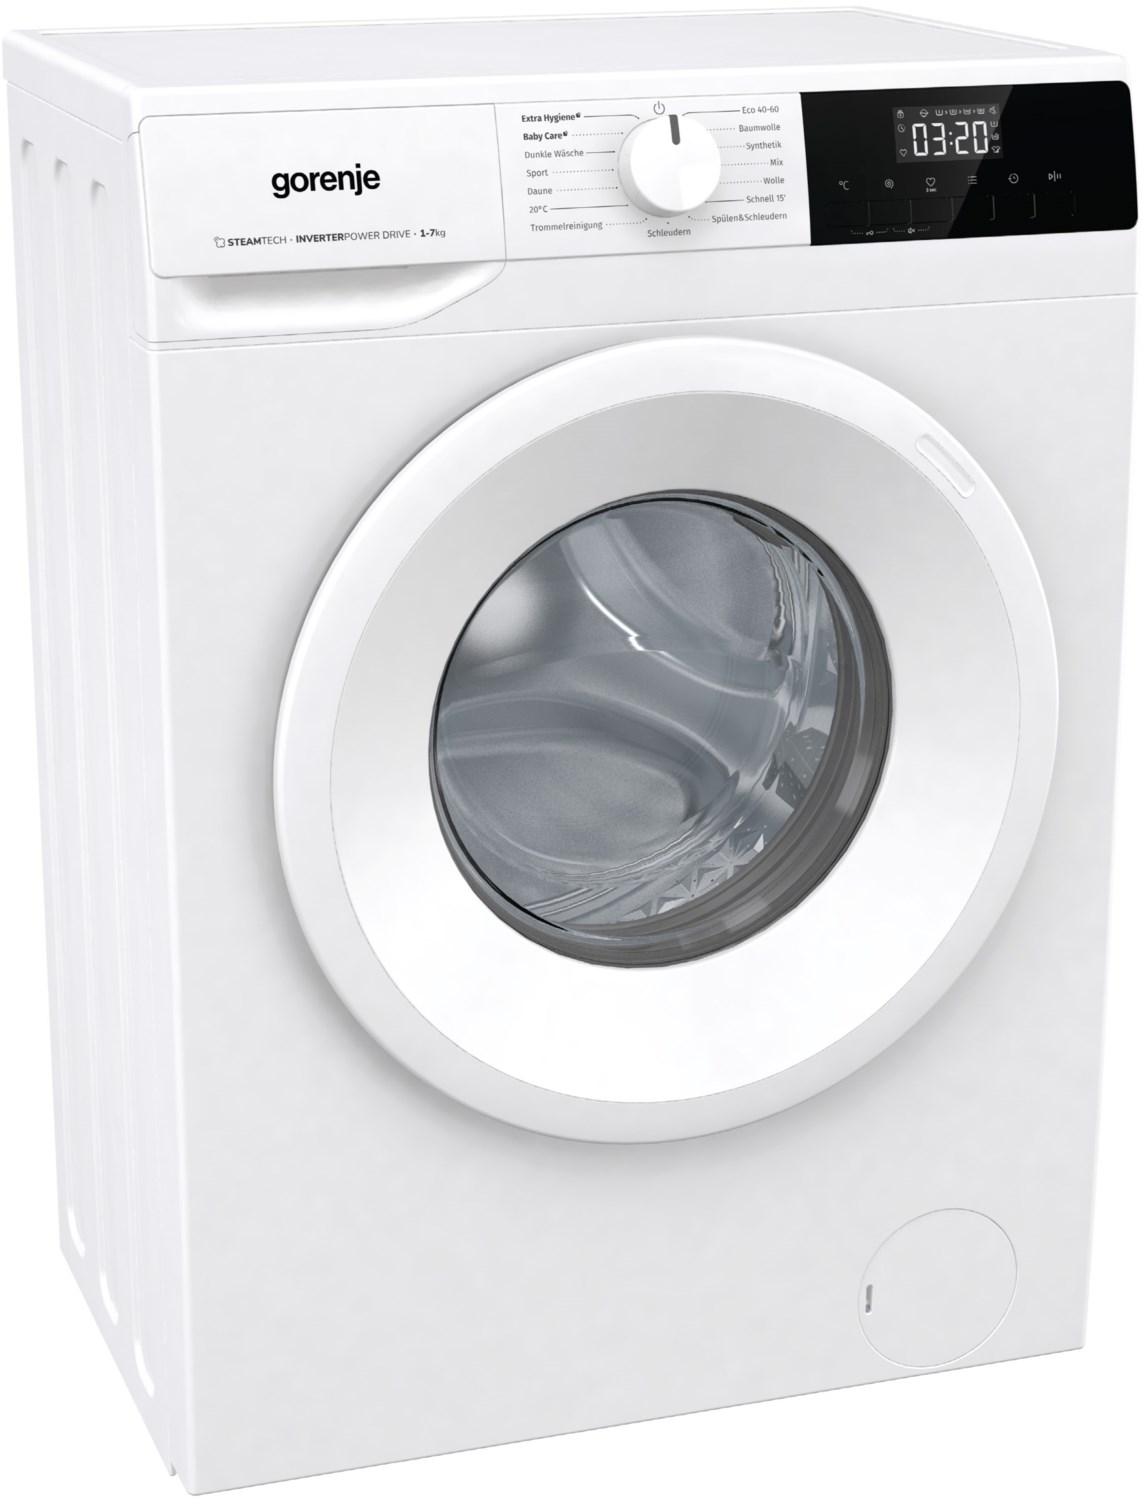 WNHPI74SCS/DE Stand-Waschmaschine-Frontlader weiß / C